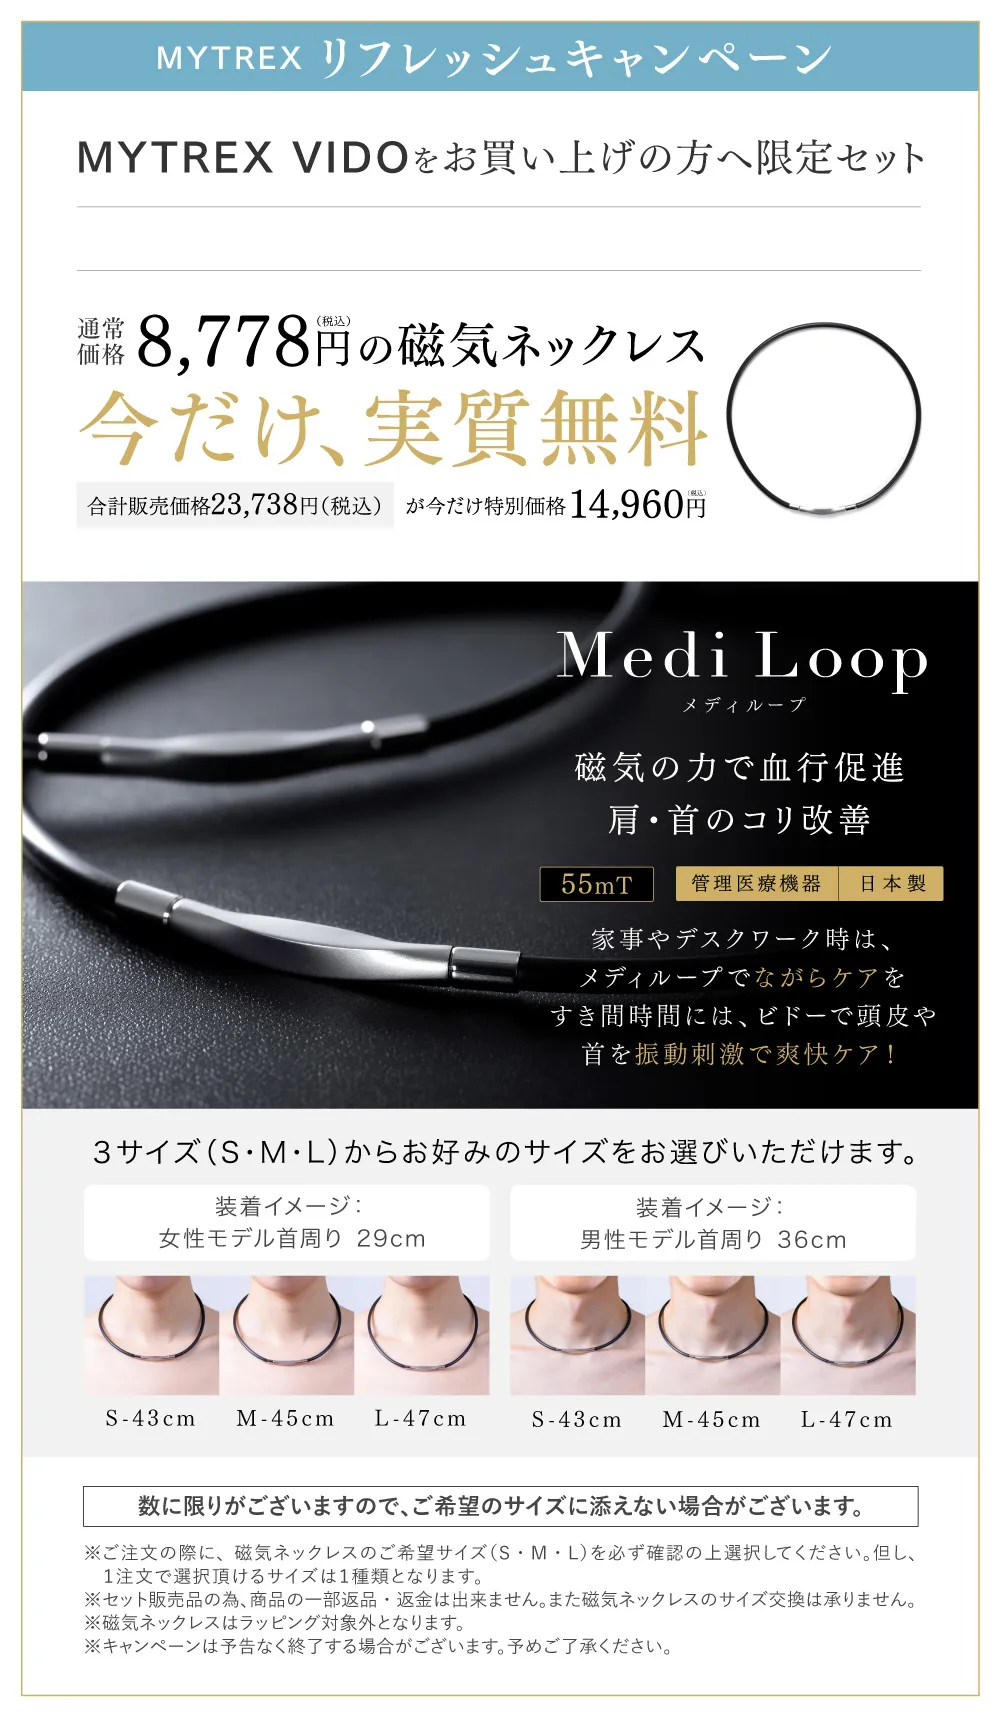 MYTREX Medi Loop